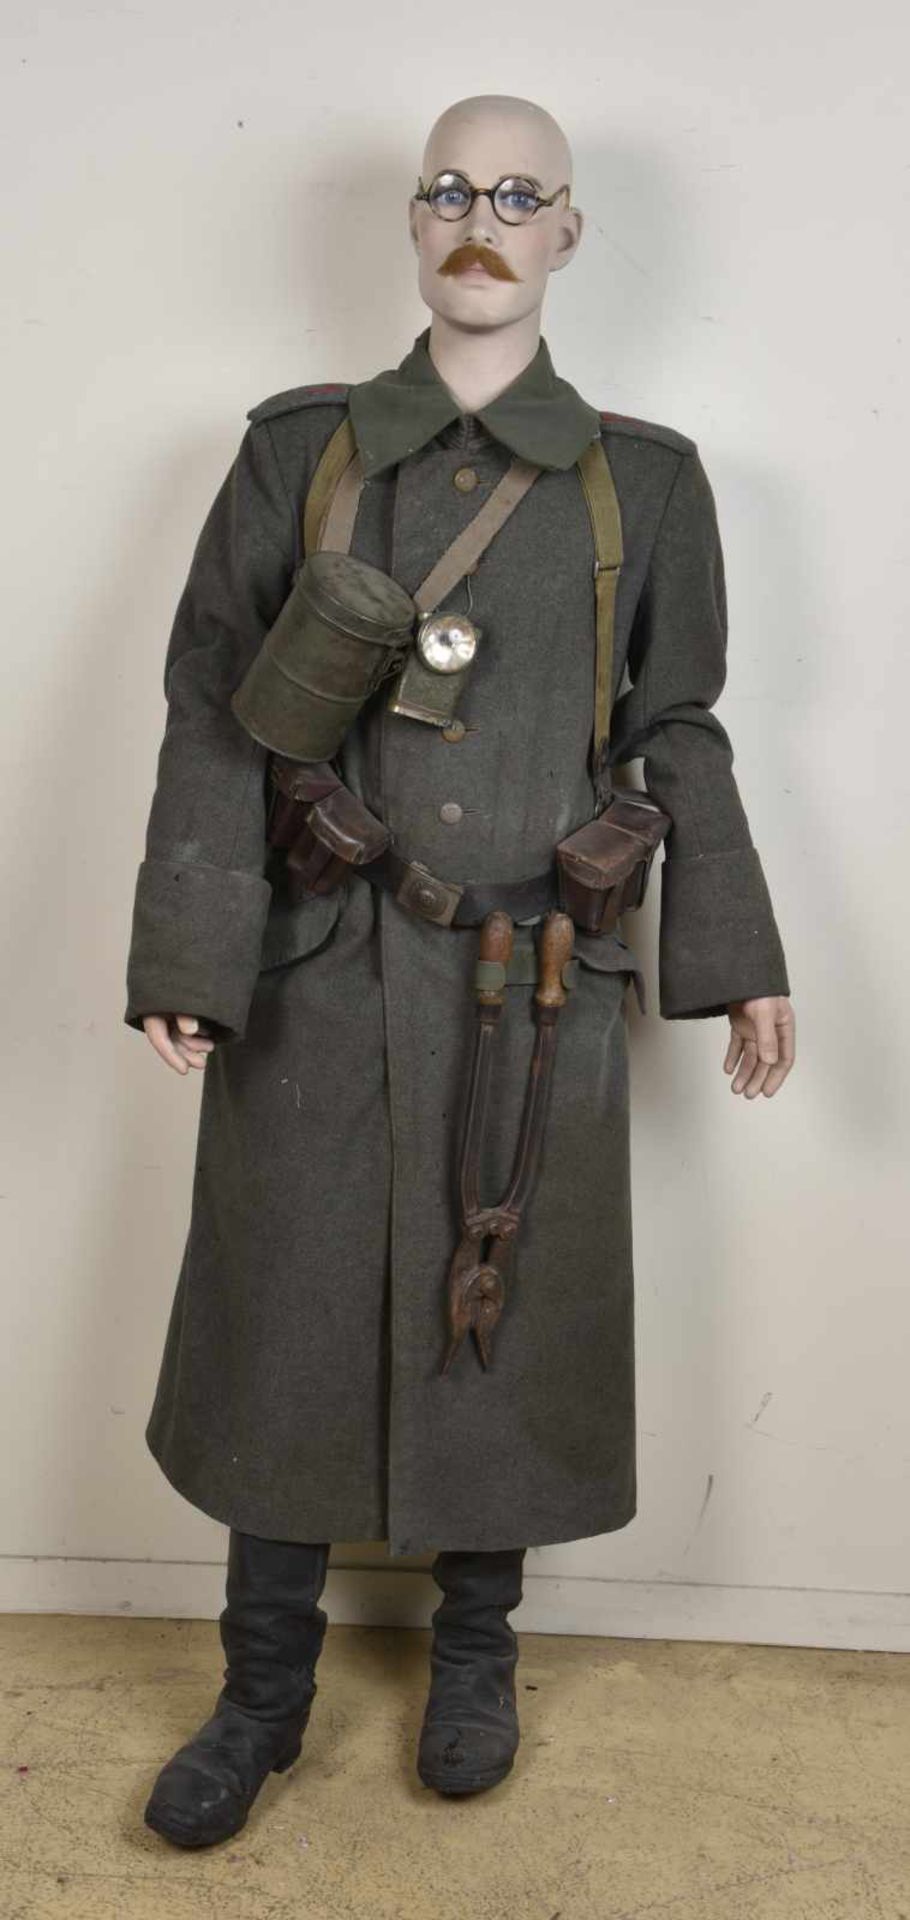 Reproduction muséale d'un soldat allemand de la première guerre mondiale Comprenant un mannequin